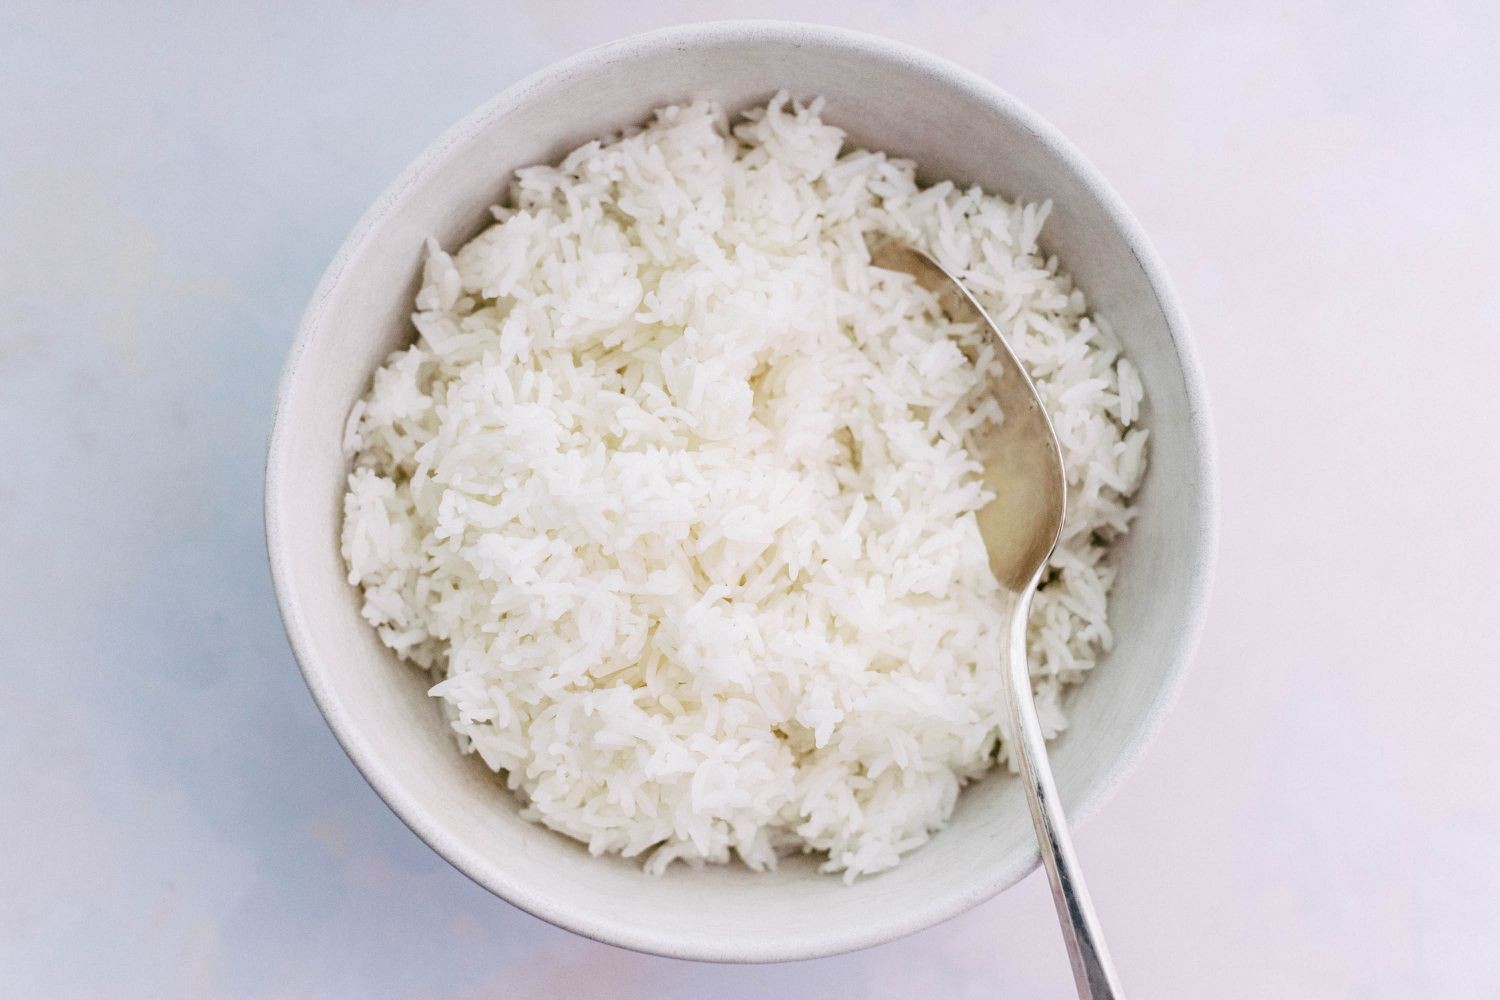 ماذا يحدث عند تناول الأرز الأبيض باستمرار؟